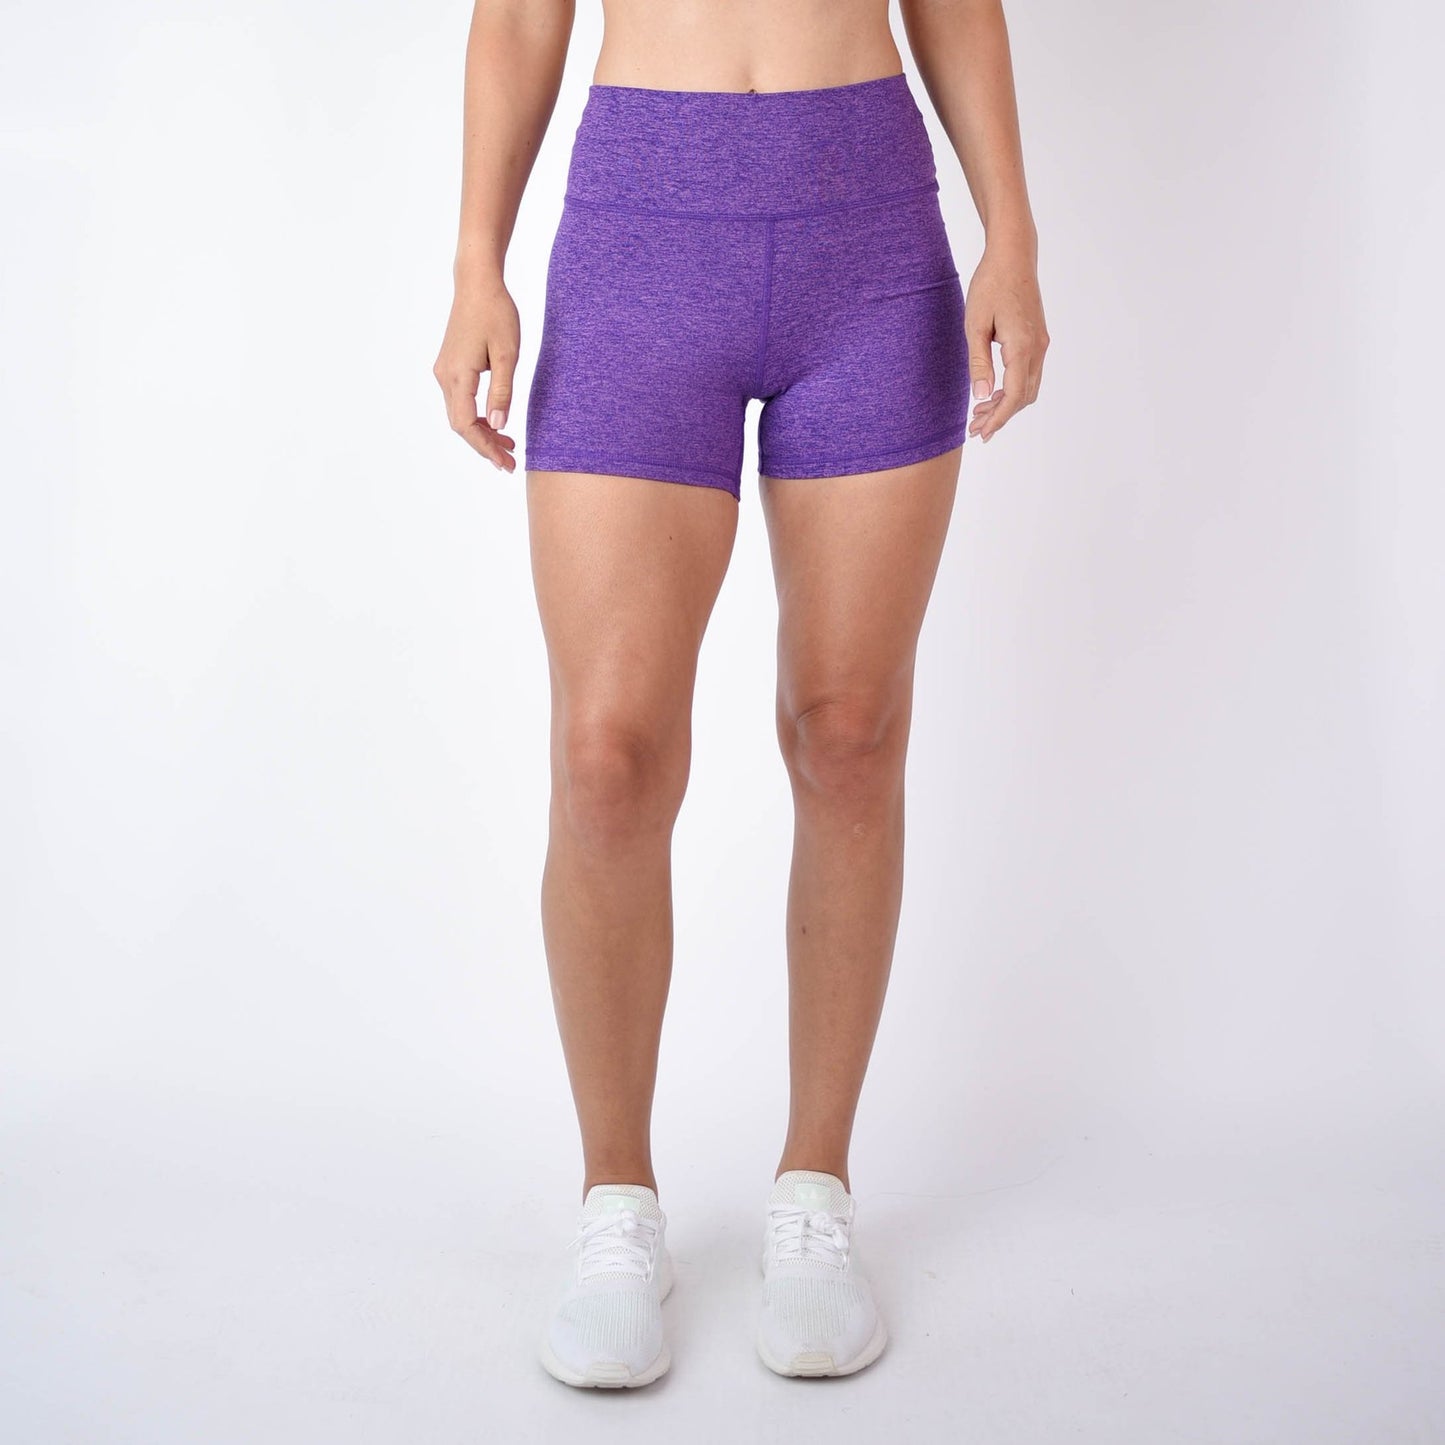 FLEO Bright Violet Shorts (True High Contour) - 9 for 9